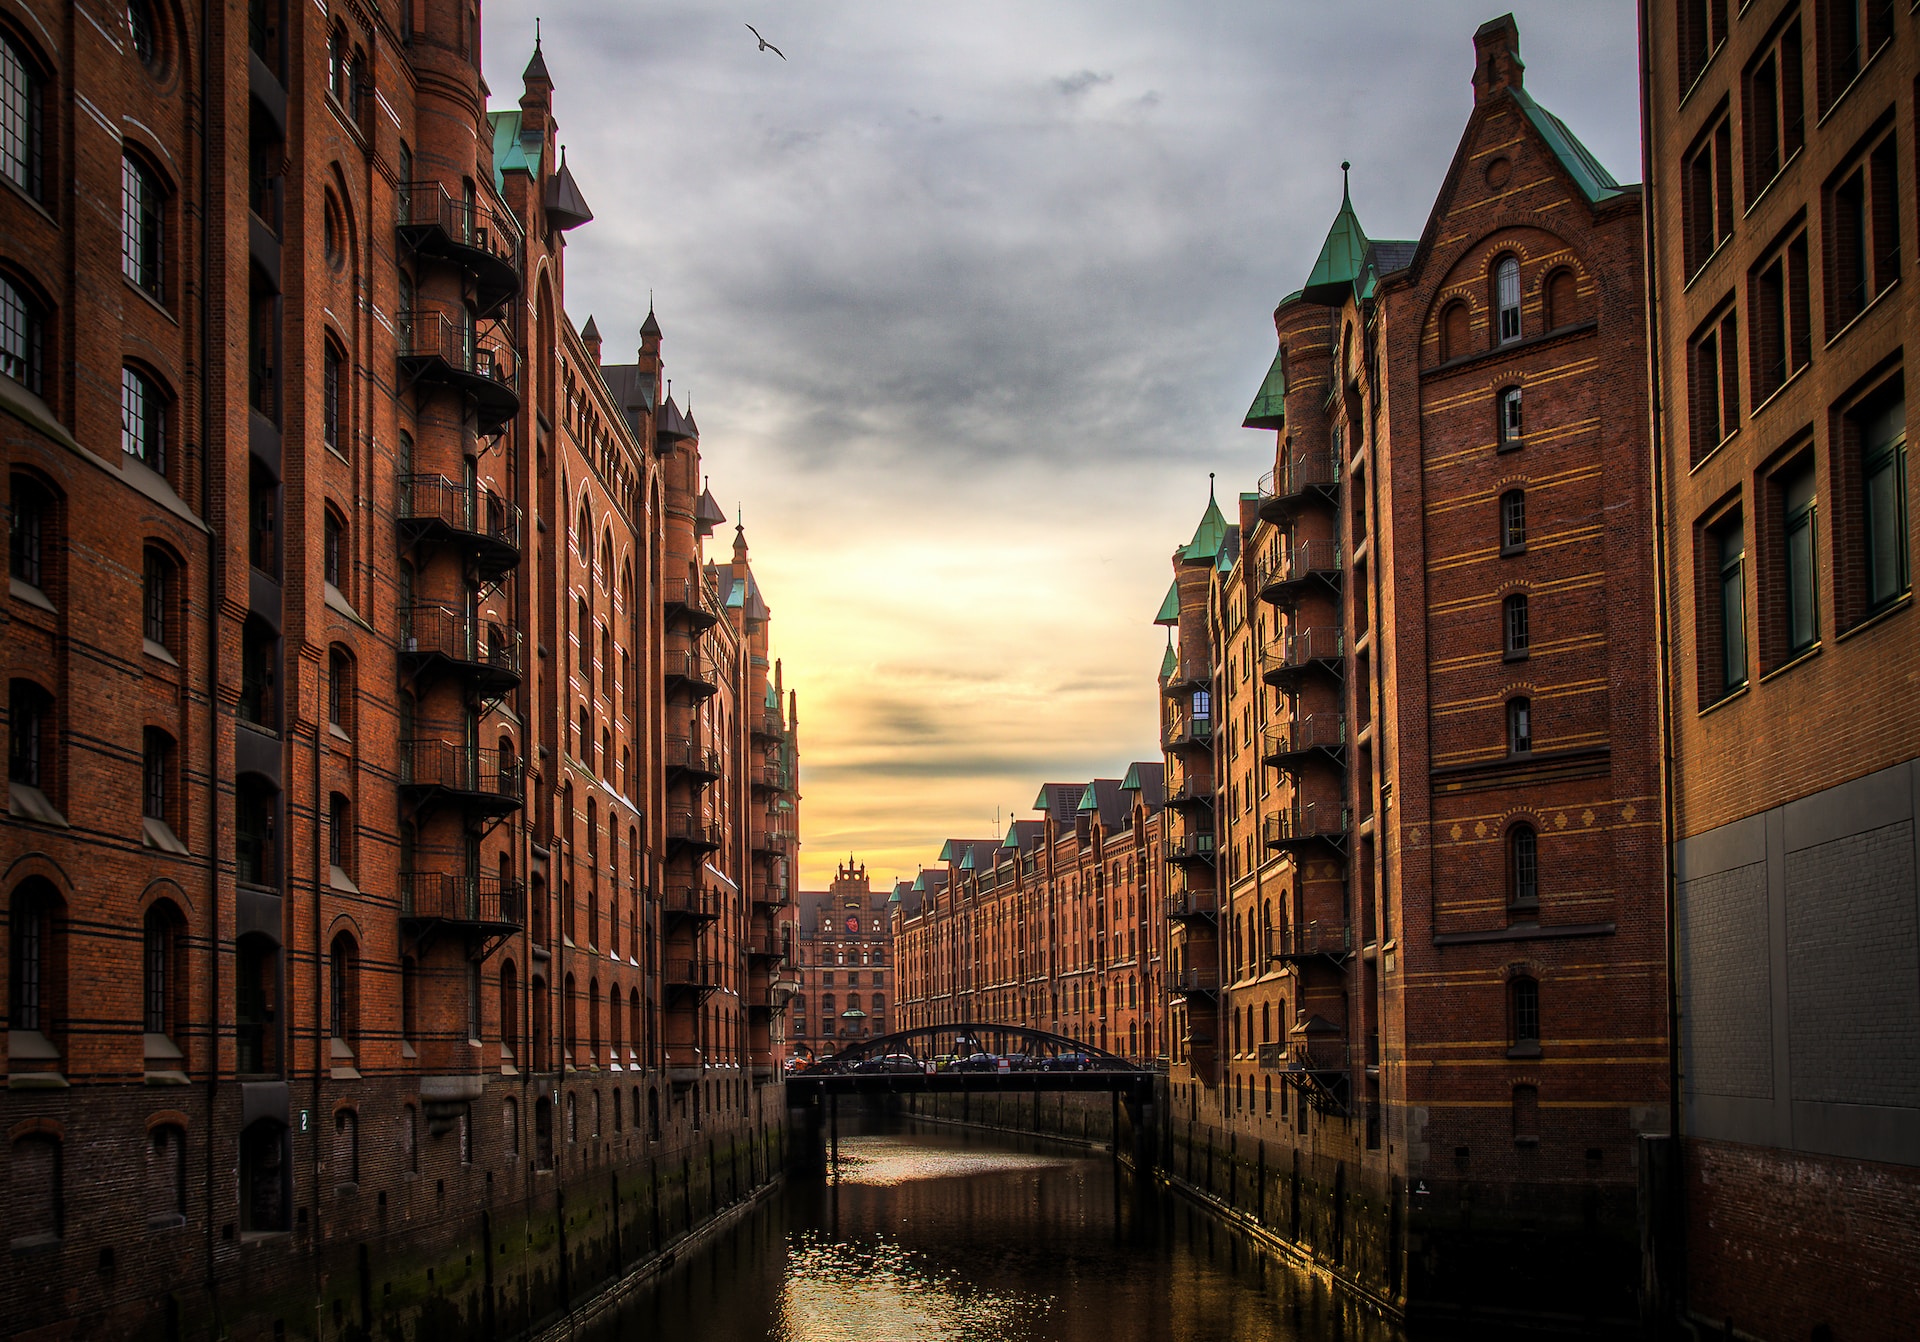 river between brown brick buildings